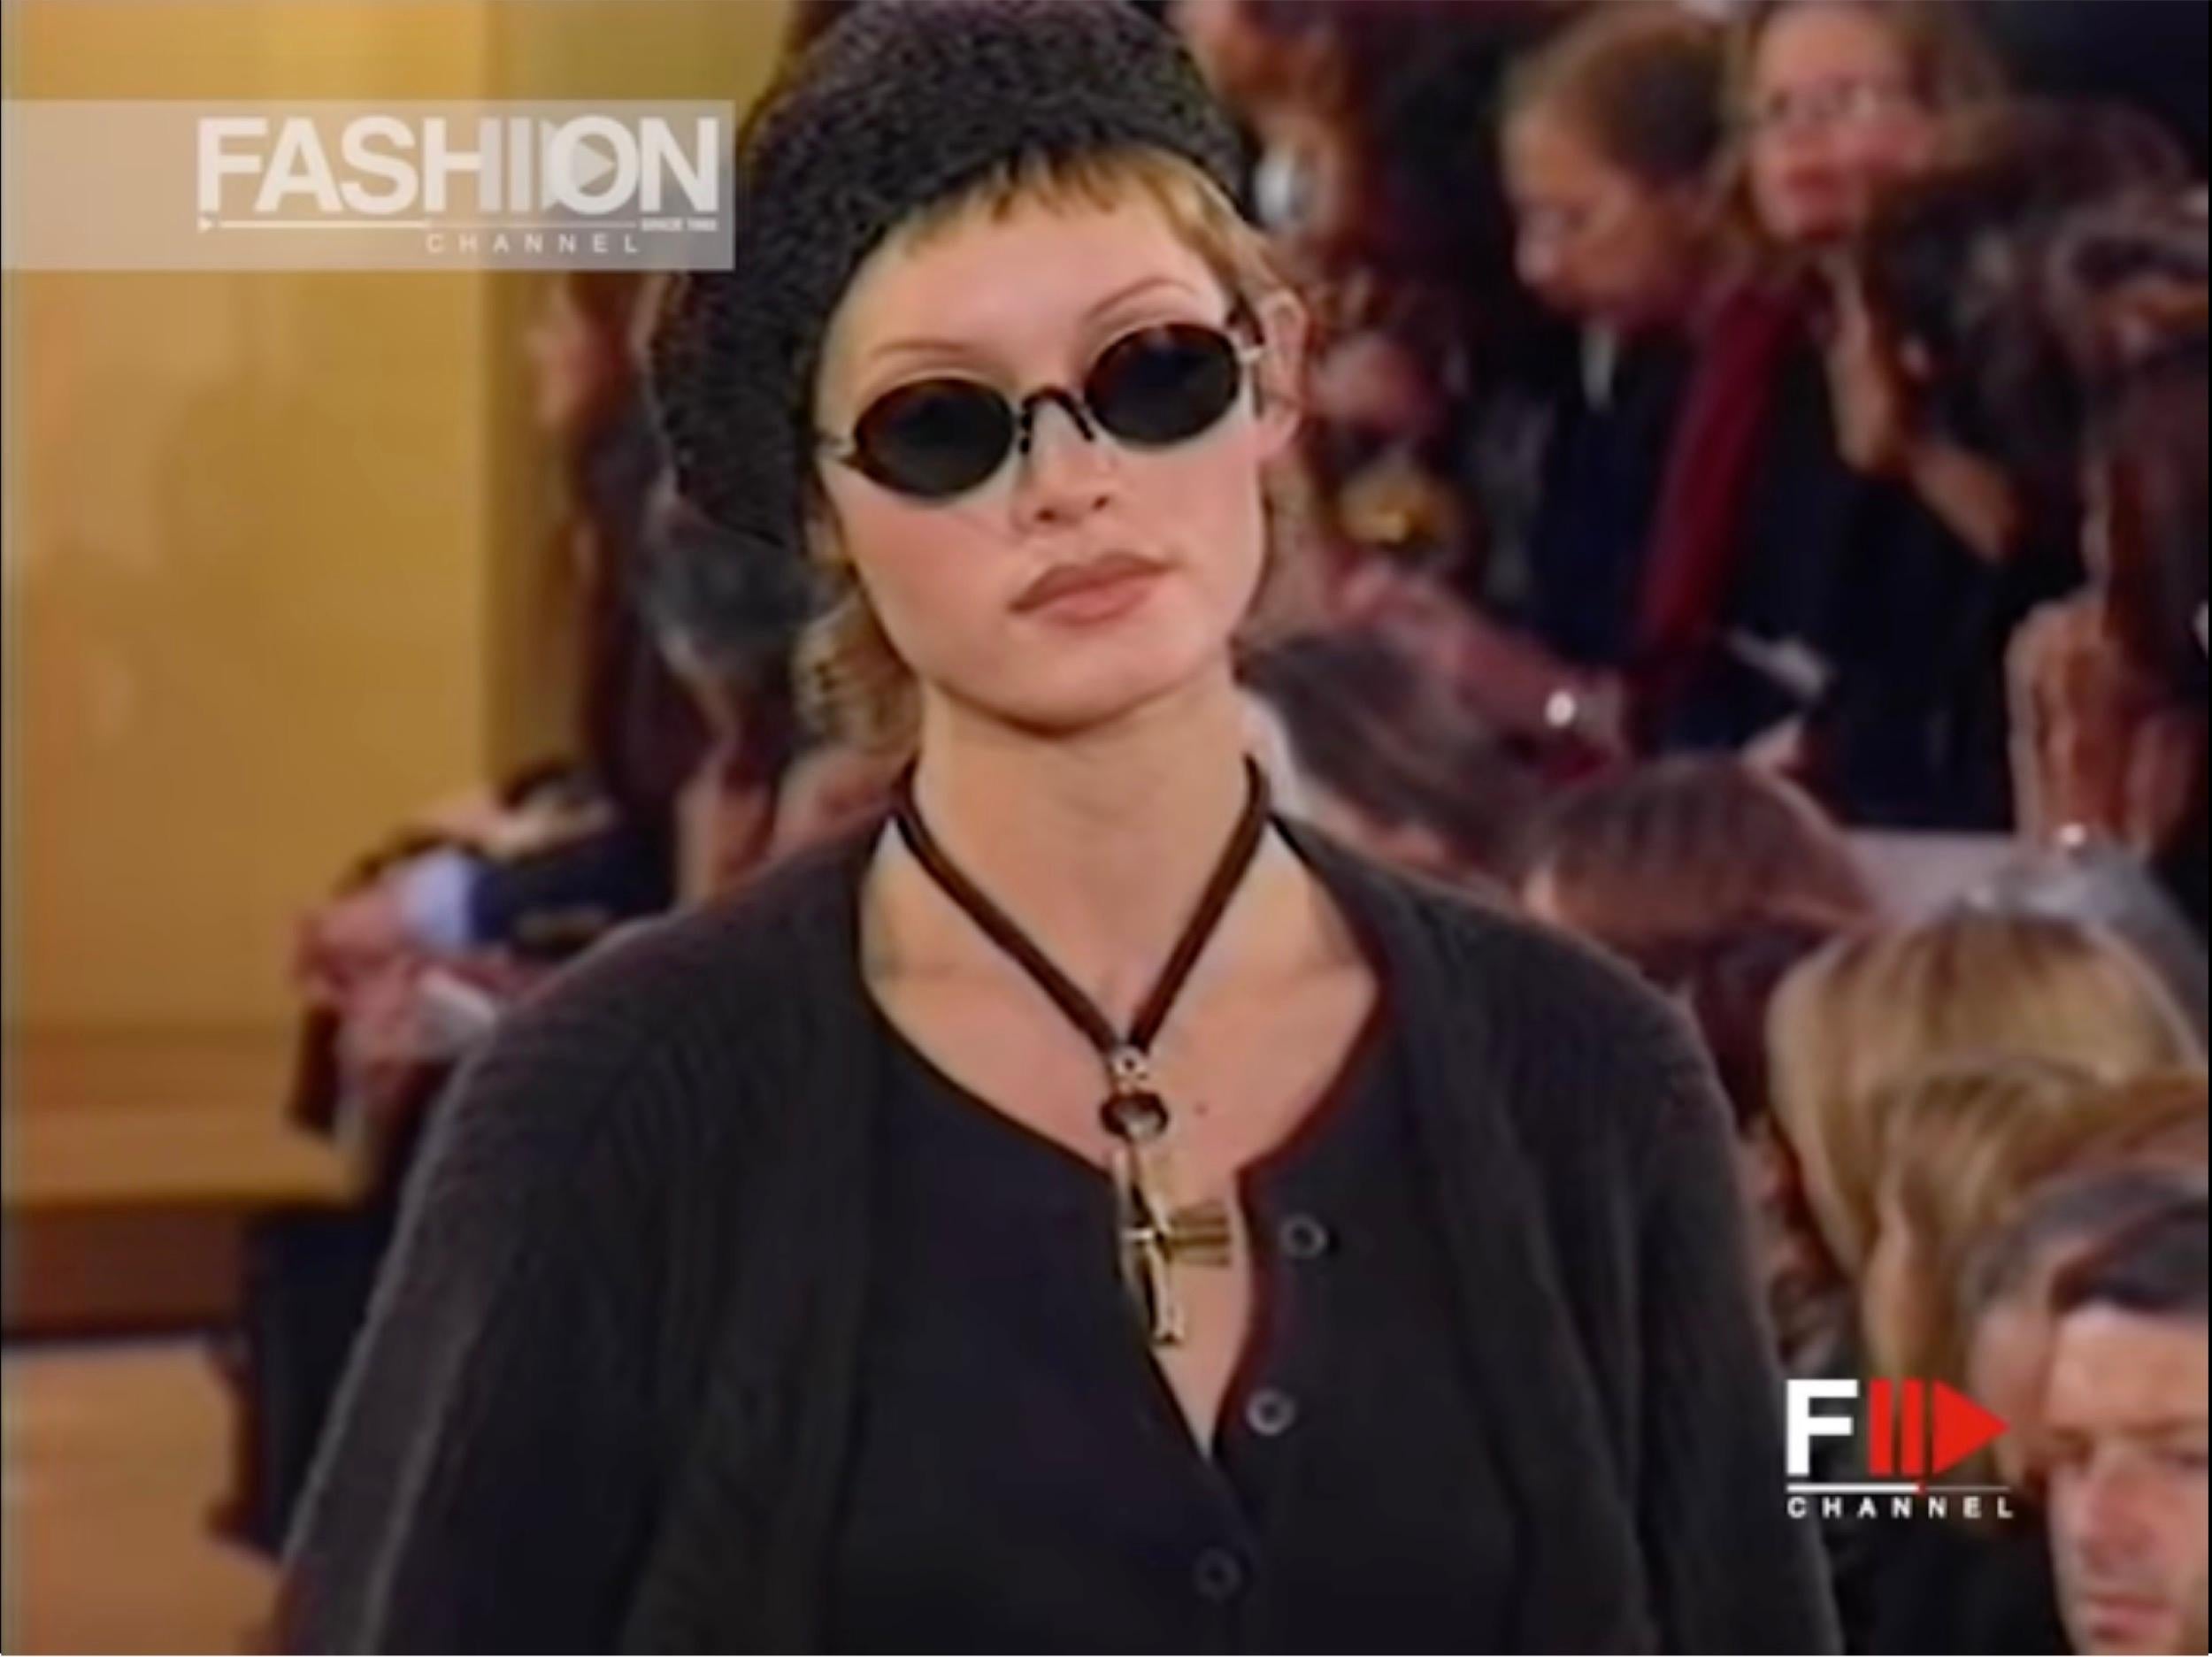 Donna Karan FW 1993
Chaque look était agrémenté d'un béret de couleur grise, marron et noire, en velours ou en chenille tricotée.  
Celui-ci est un chenil brun (presque noir) en tricot ultra doux.
Le Radius est un peu extensible pour un ajustement